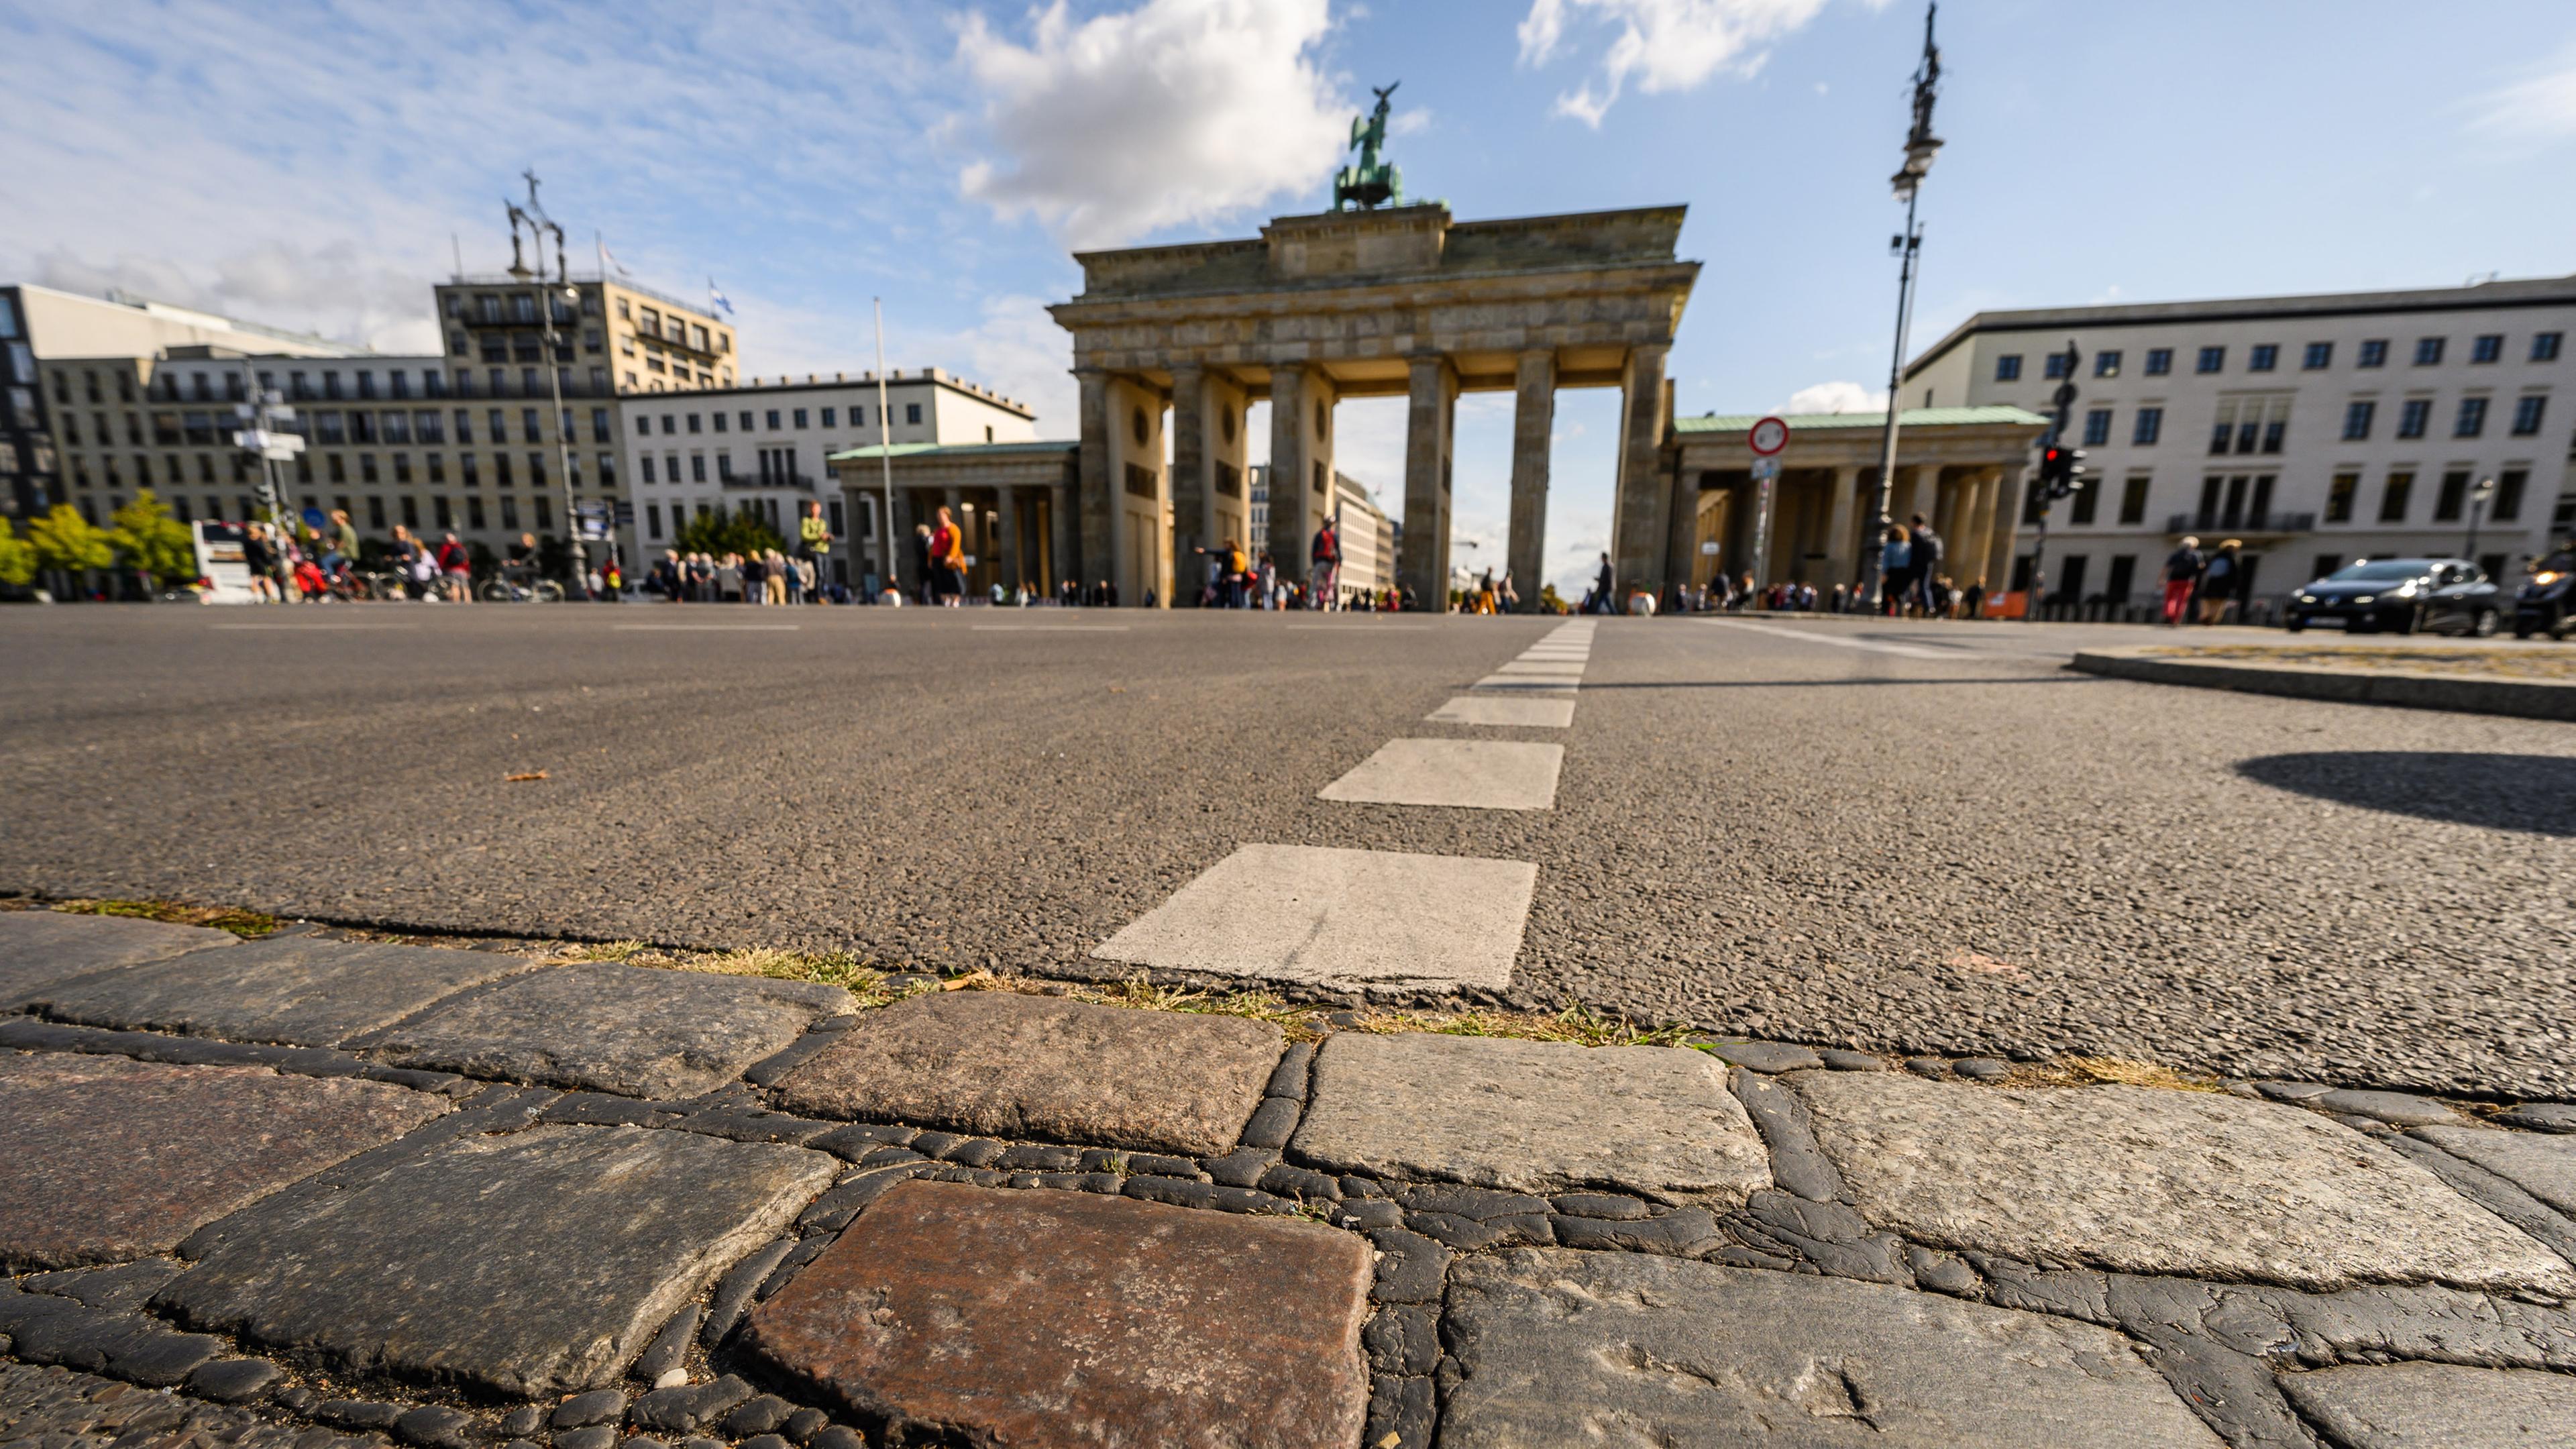 Archiv: Pflastersteine vor dem Brandenburger Tor in Berlin am 10.09.2019